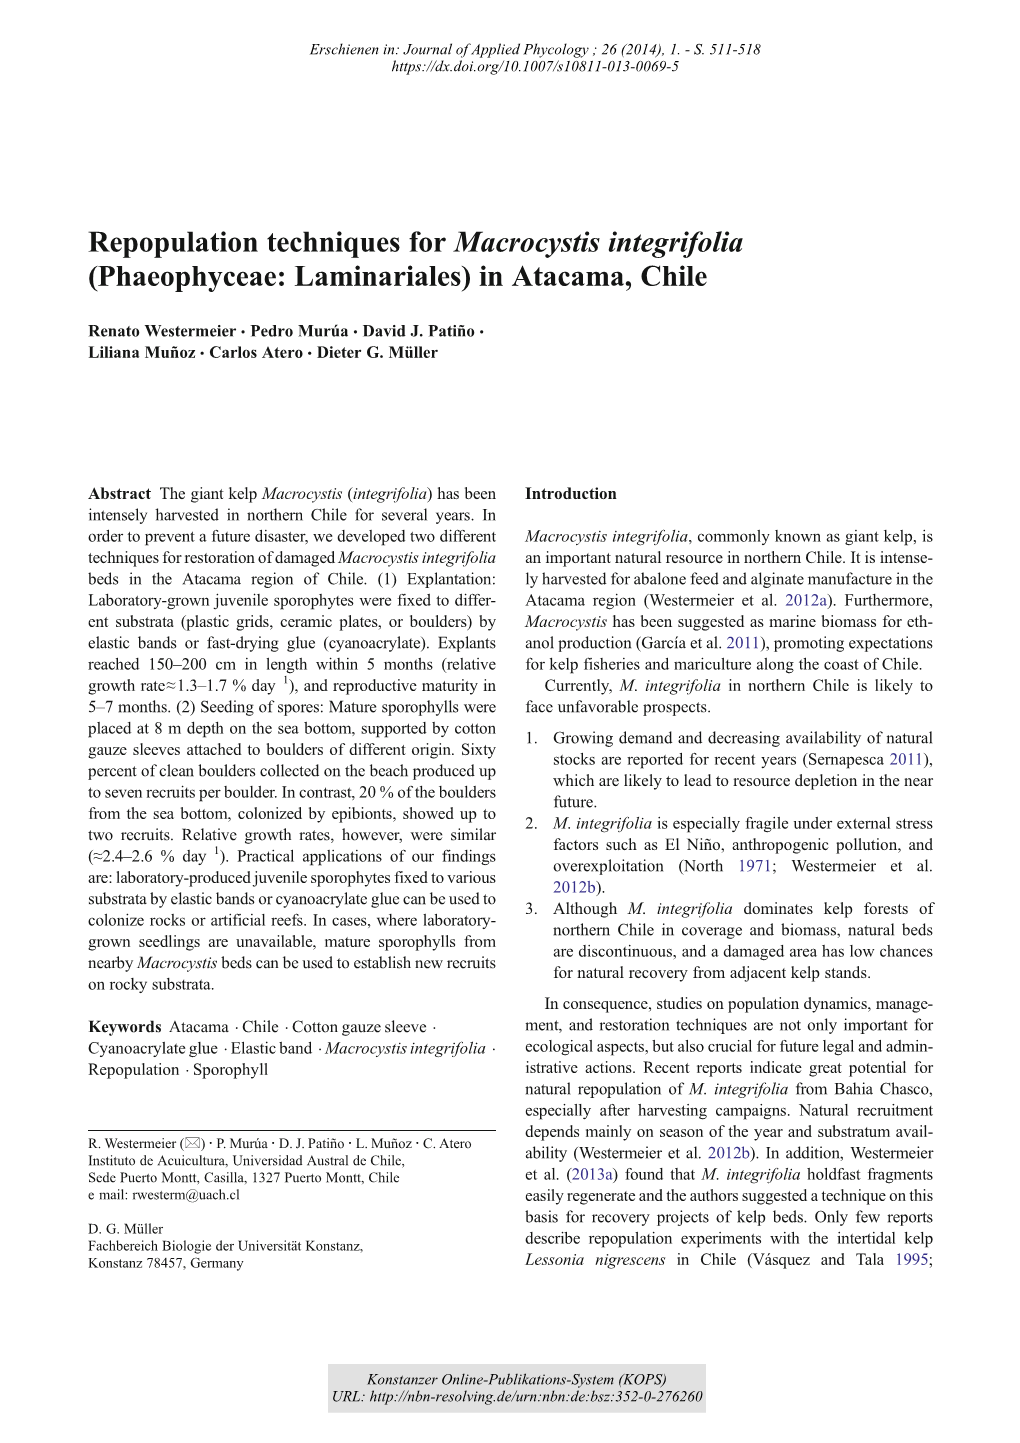 Repopulation Techniques for Macrocystis Integrifolia (Phaeophyceae: Laminariales) in Atacama, Chile